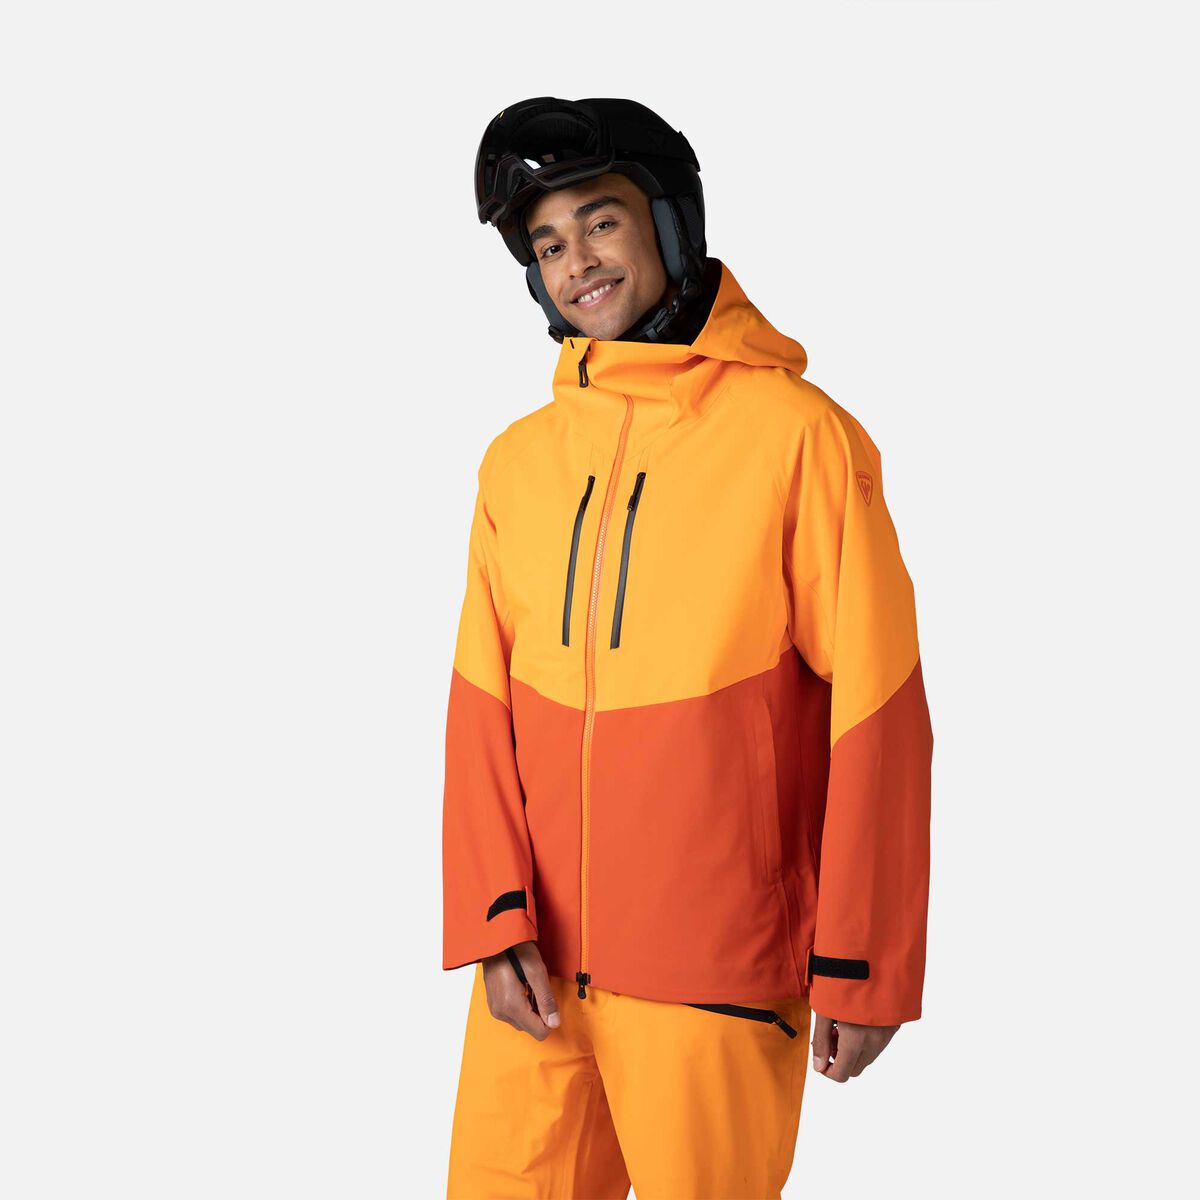 Rossignol Men's Evader Ski Jacket Orange